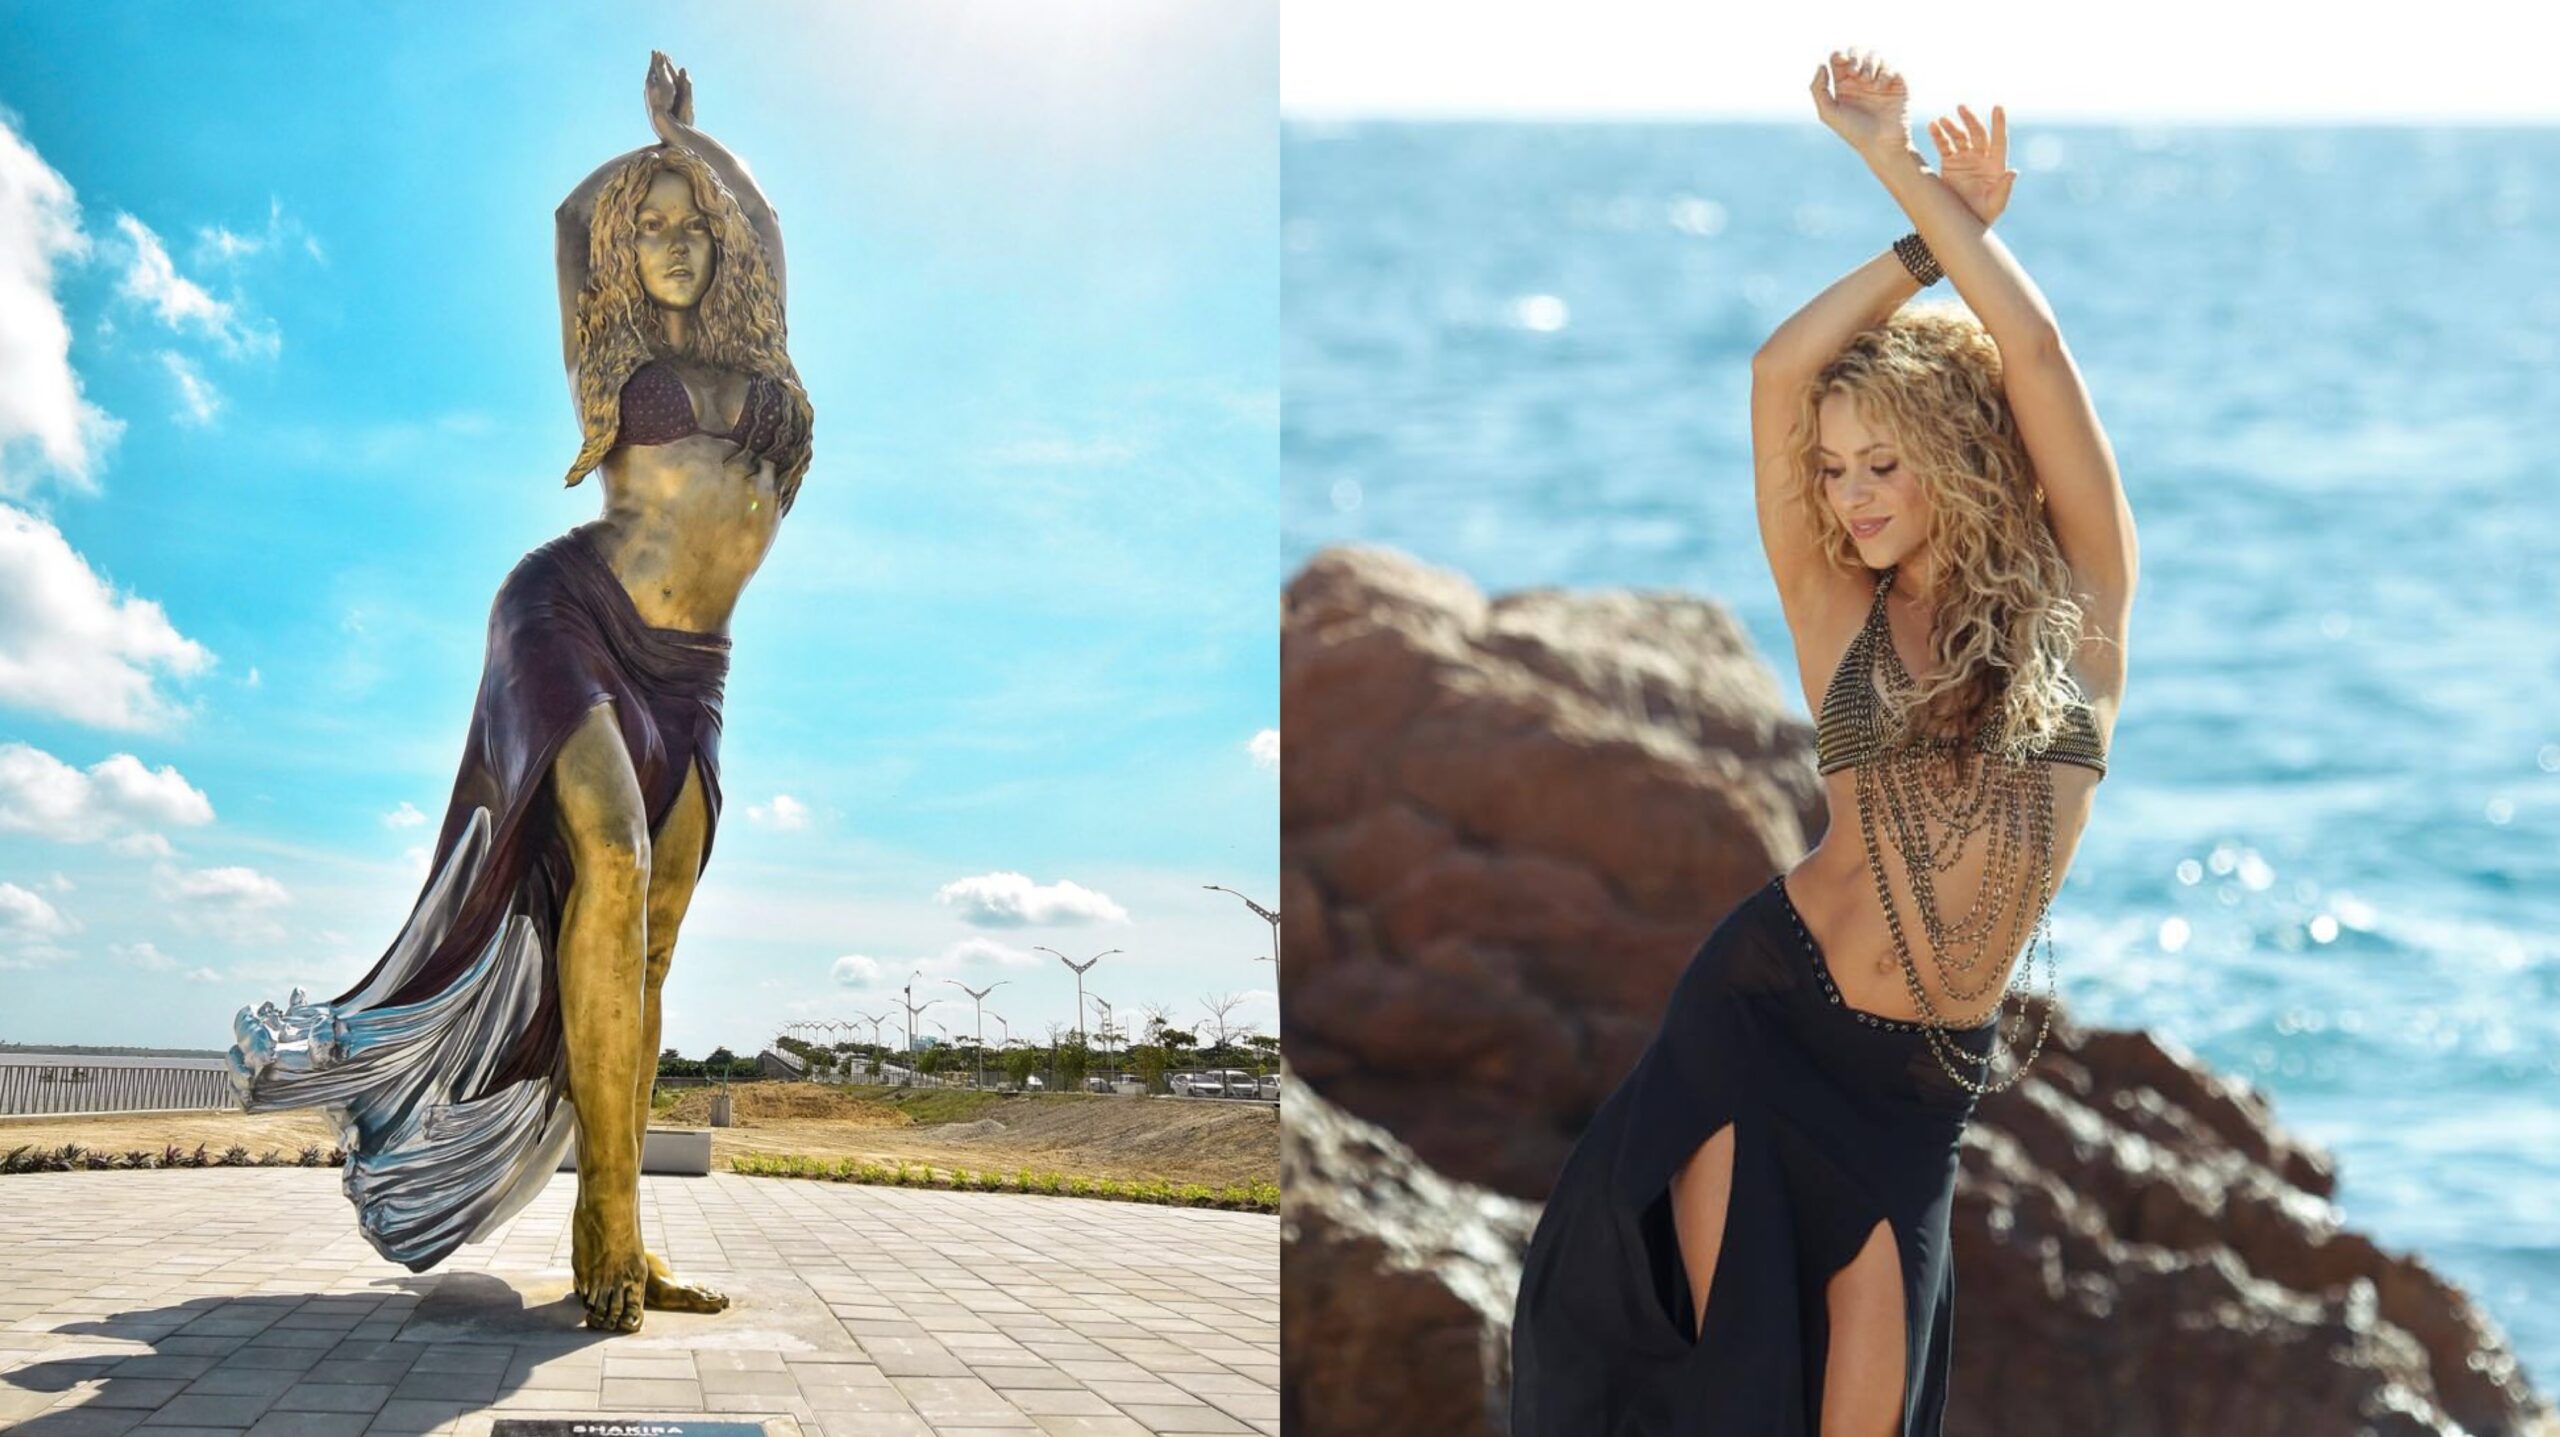 Escultura de Shakira medindo 6,5m é inaugurada em Barranquilla